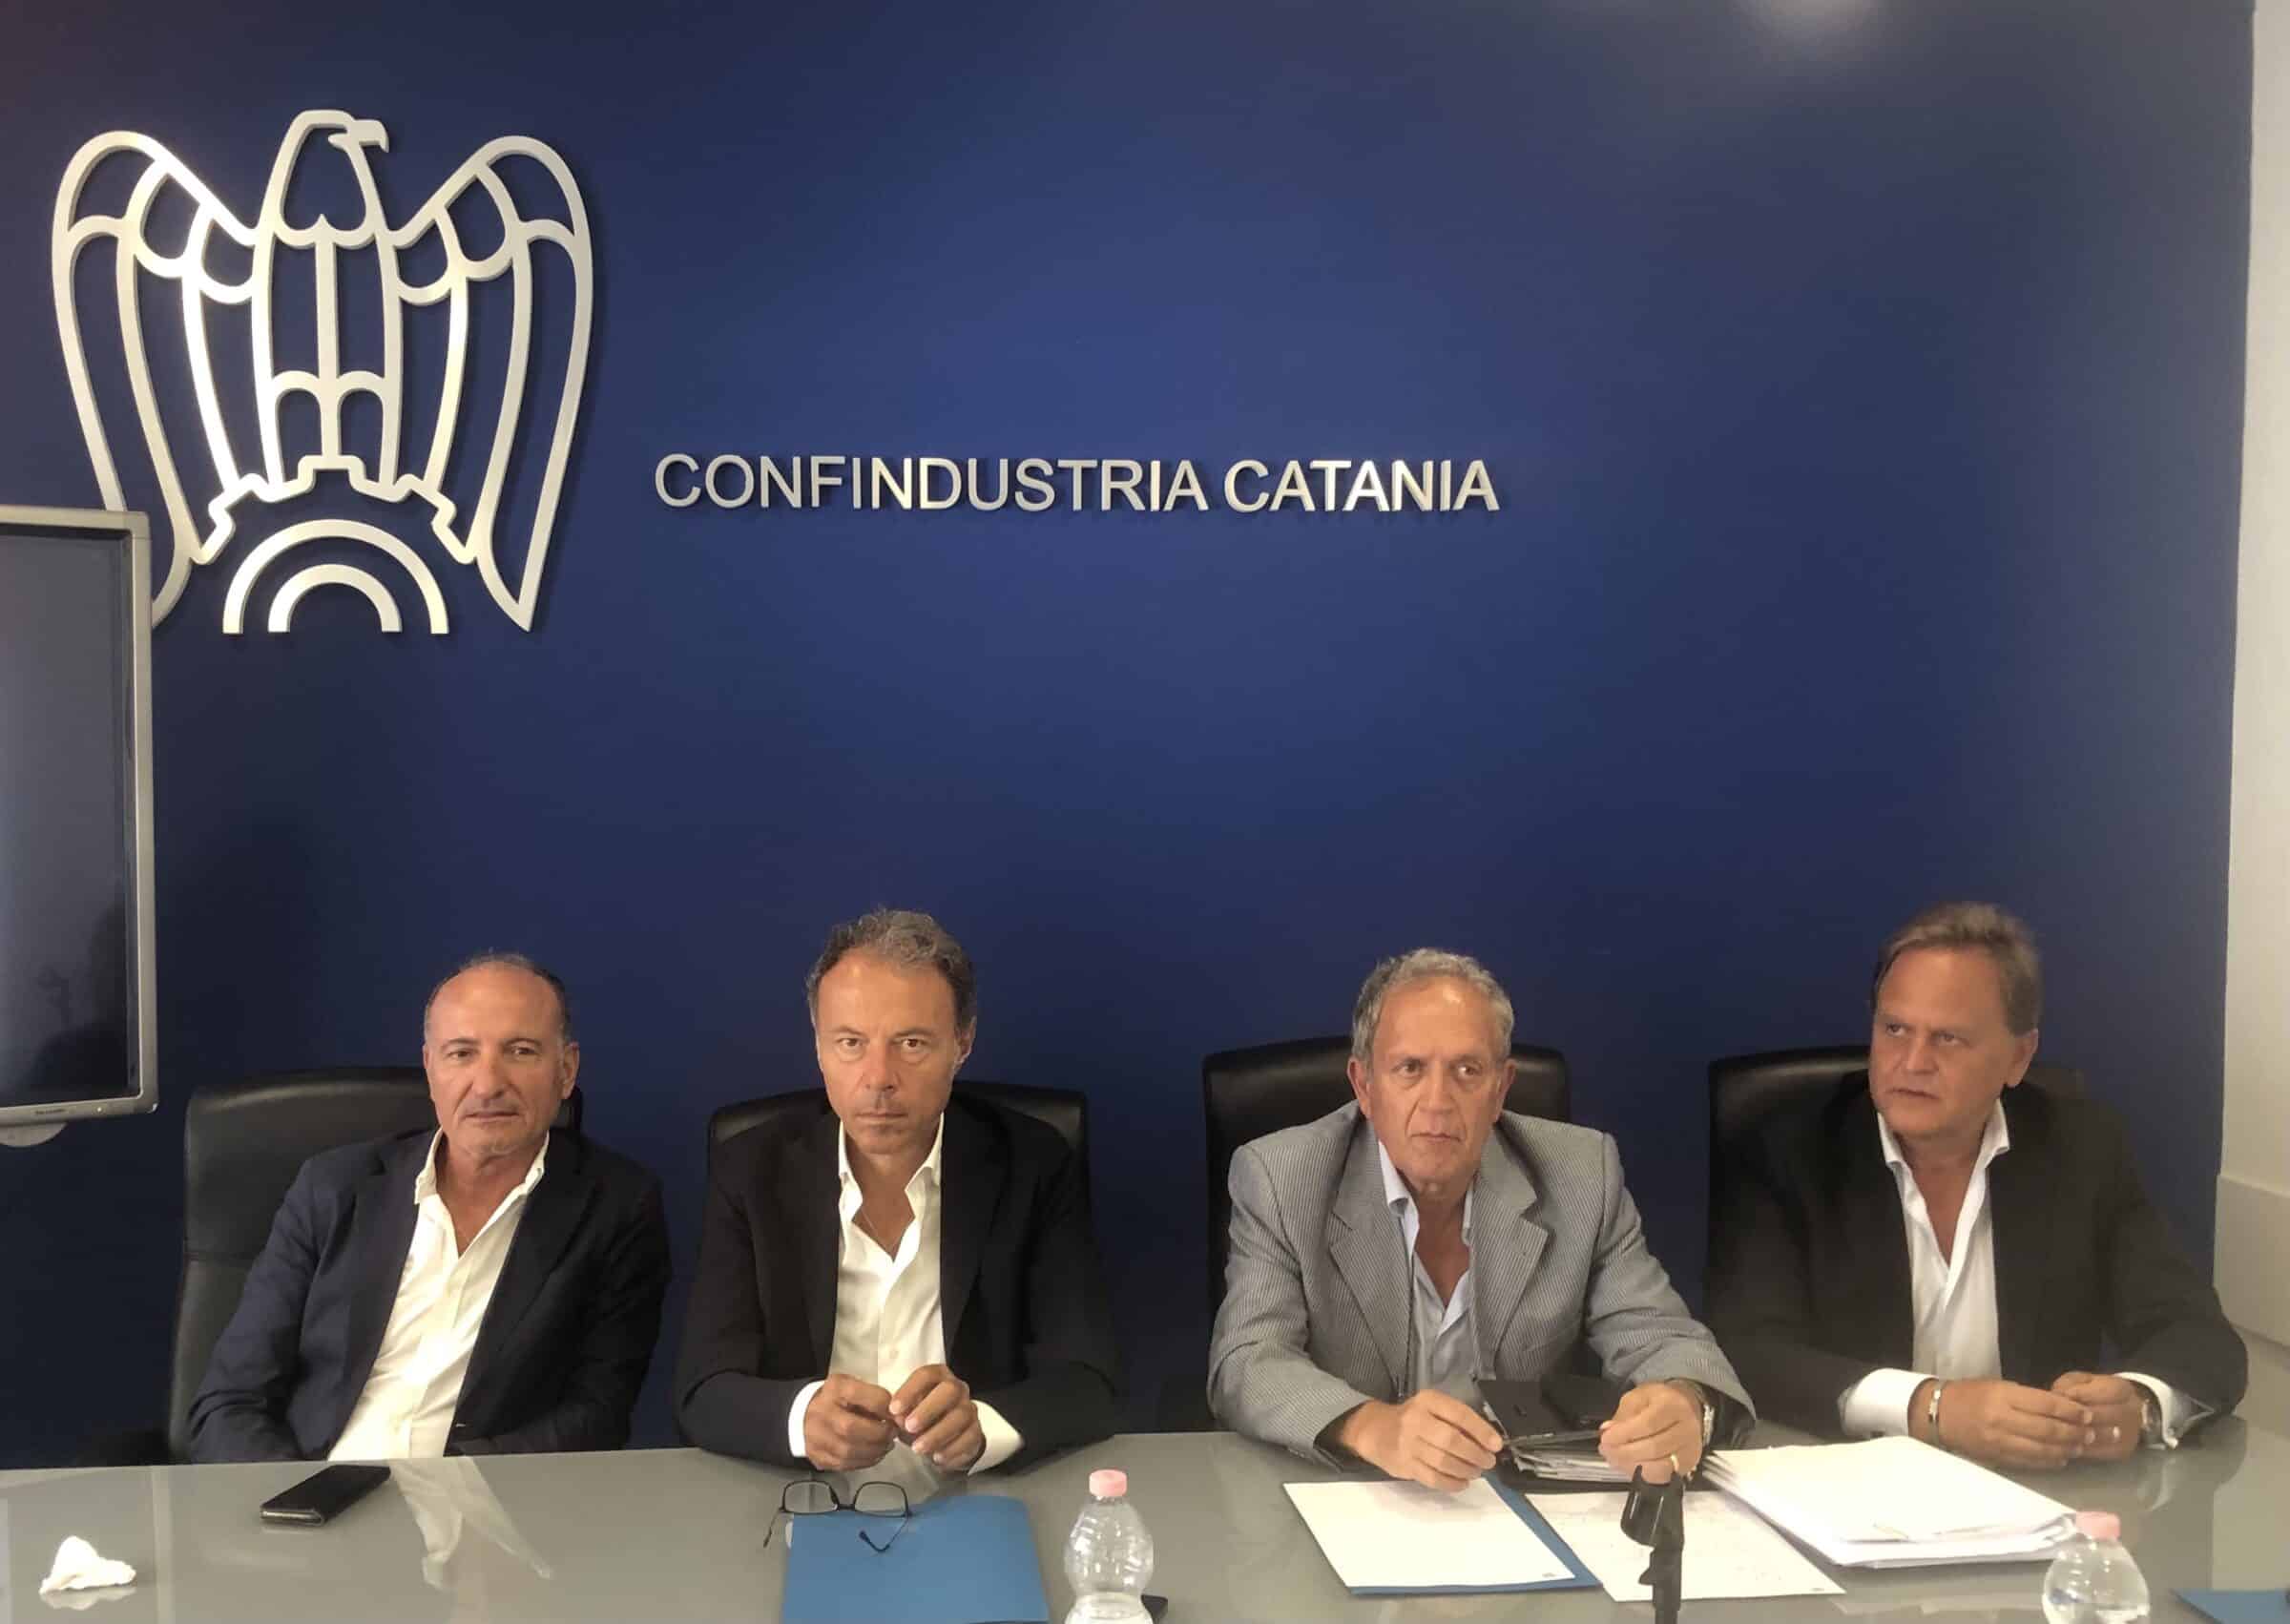 Zona industriale Catania, oltre 35 milioni di investimenti per la riqualificazione dell’area